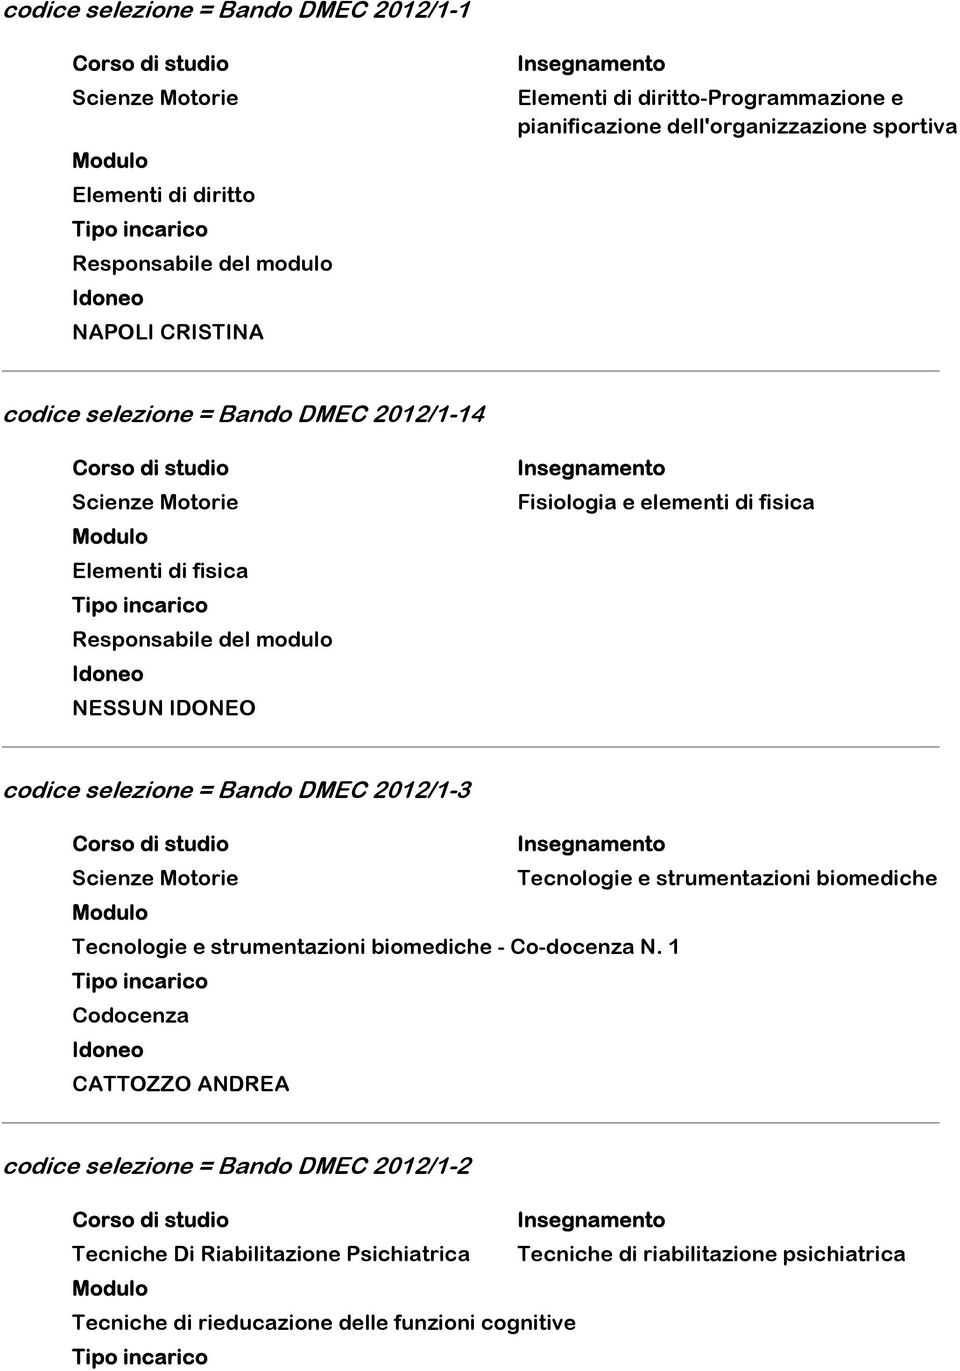 selezione = Bando DMEC 2012/1-3 Scienze Motorie Tecnologie e strumentazioni biomediche Tecnologie e strumentazioni biomediche - Co-docenza N.